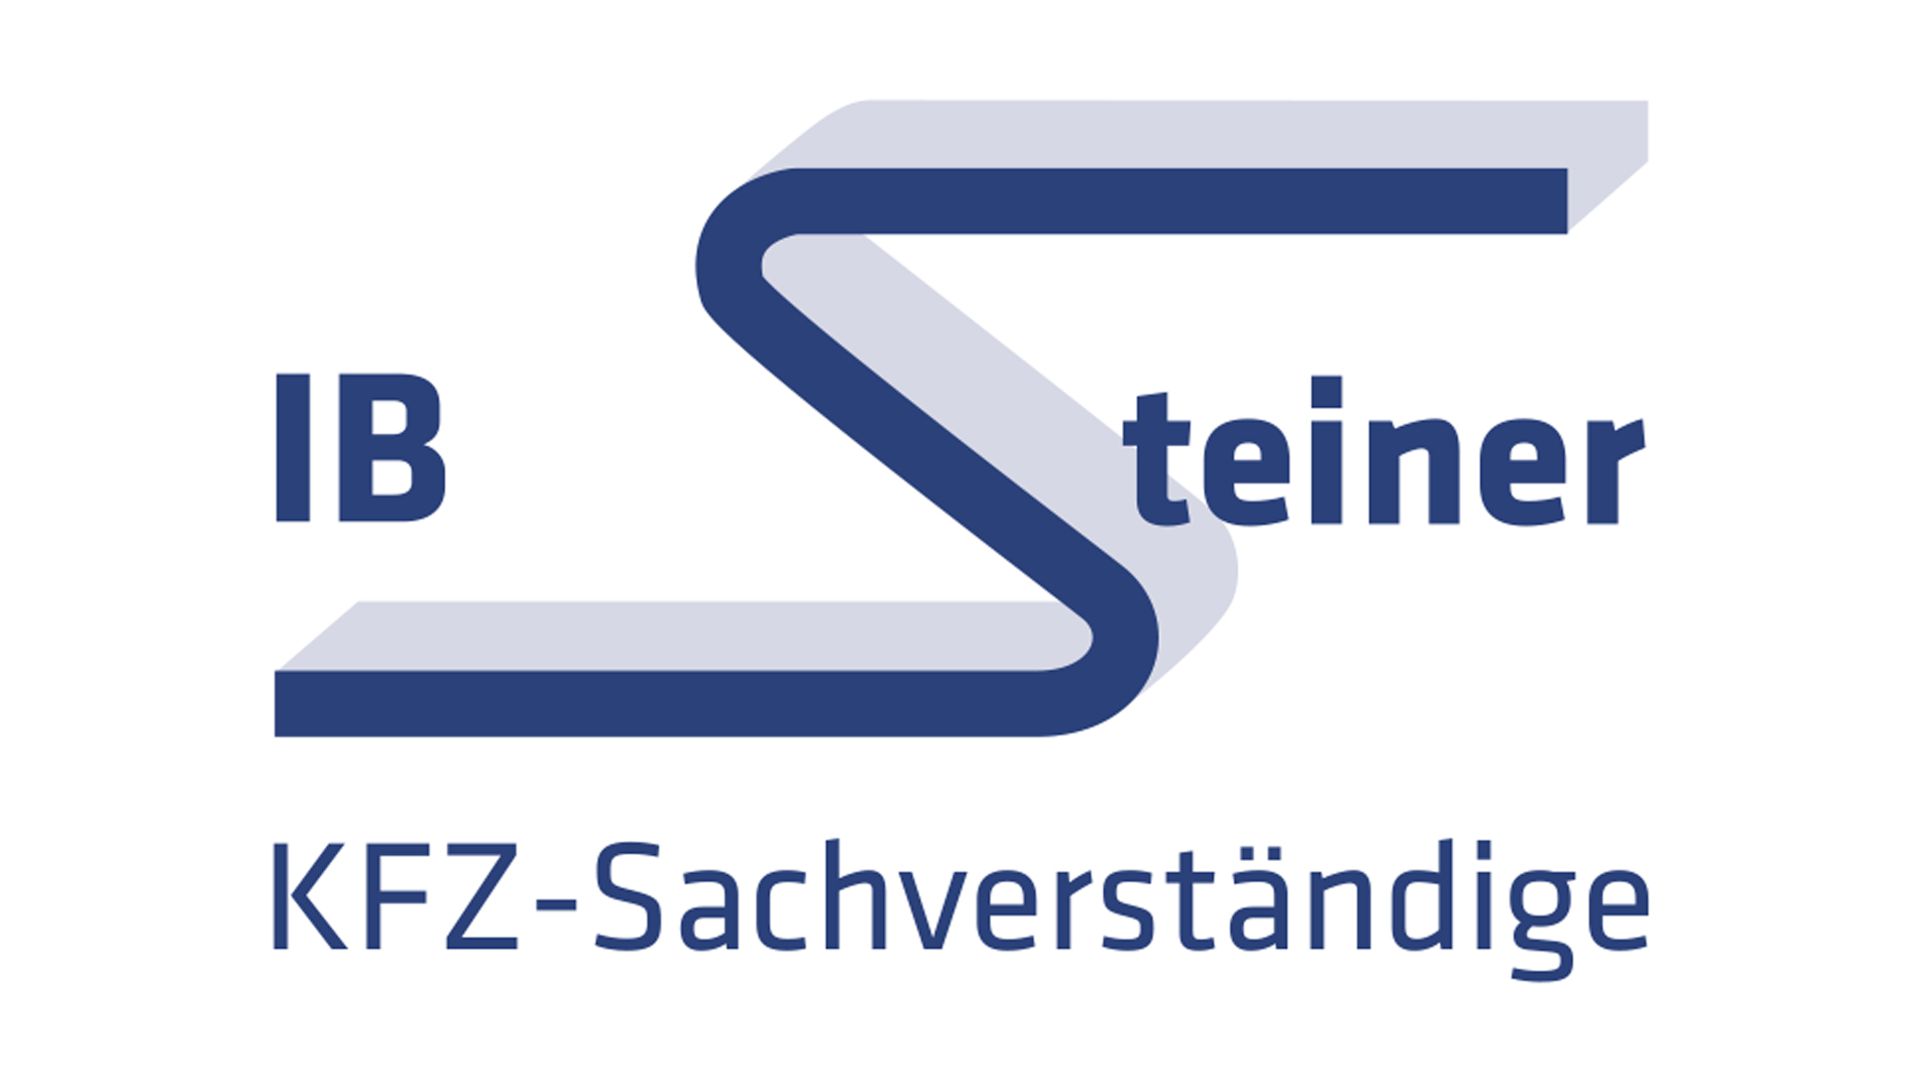 Ihr Sachverständigenbüro Steiner in Baden-Baden, Sinzheim und Gaggenau